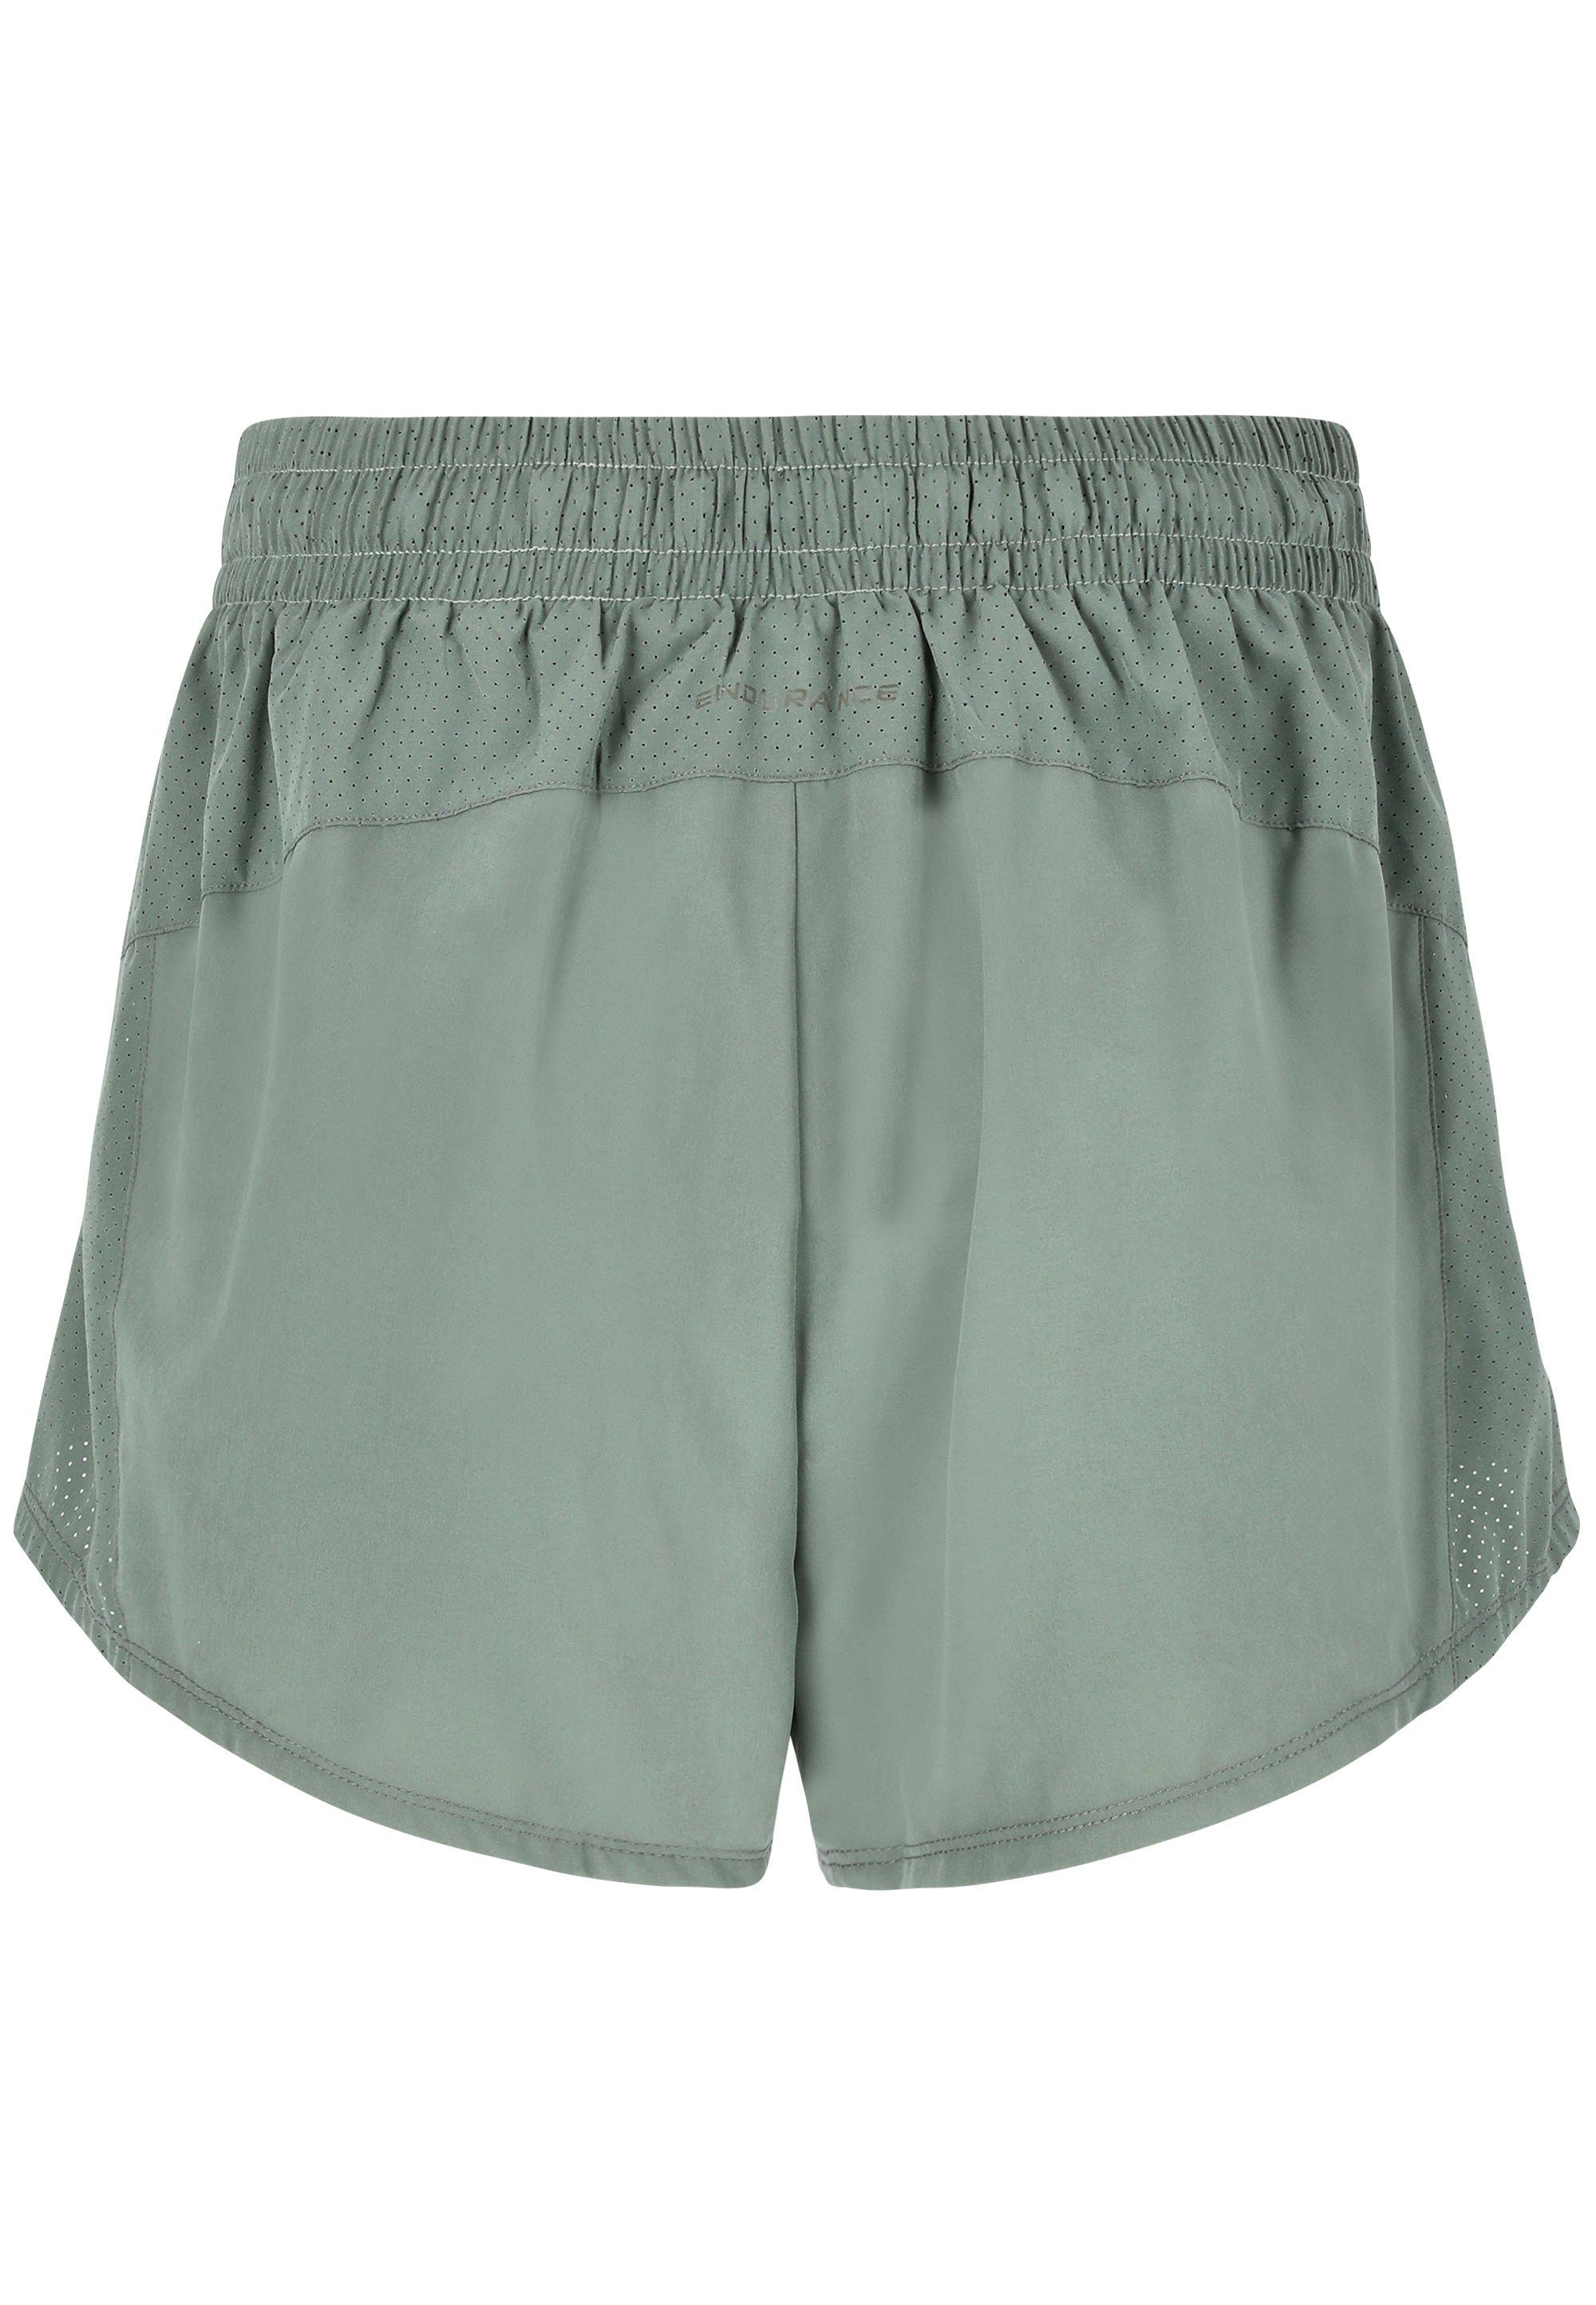 Taschen Shorts ENDURANCE mit dunkelgrün praktischen Eslaire